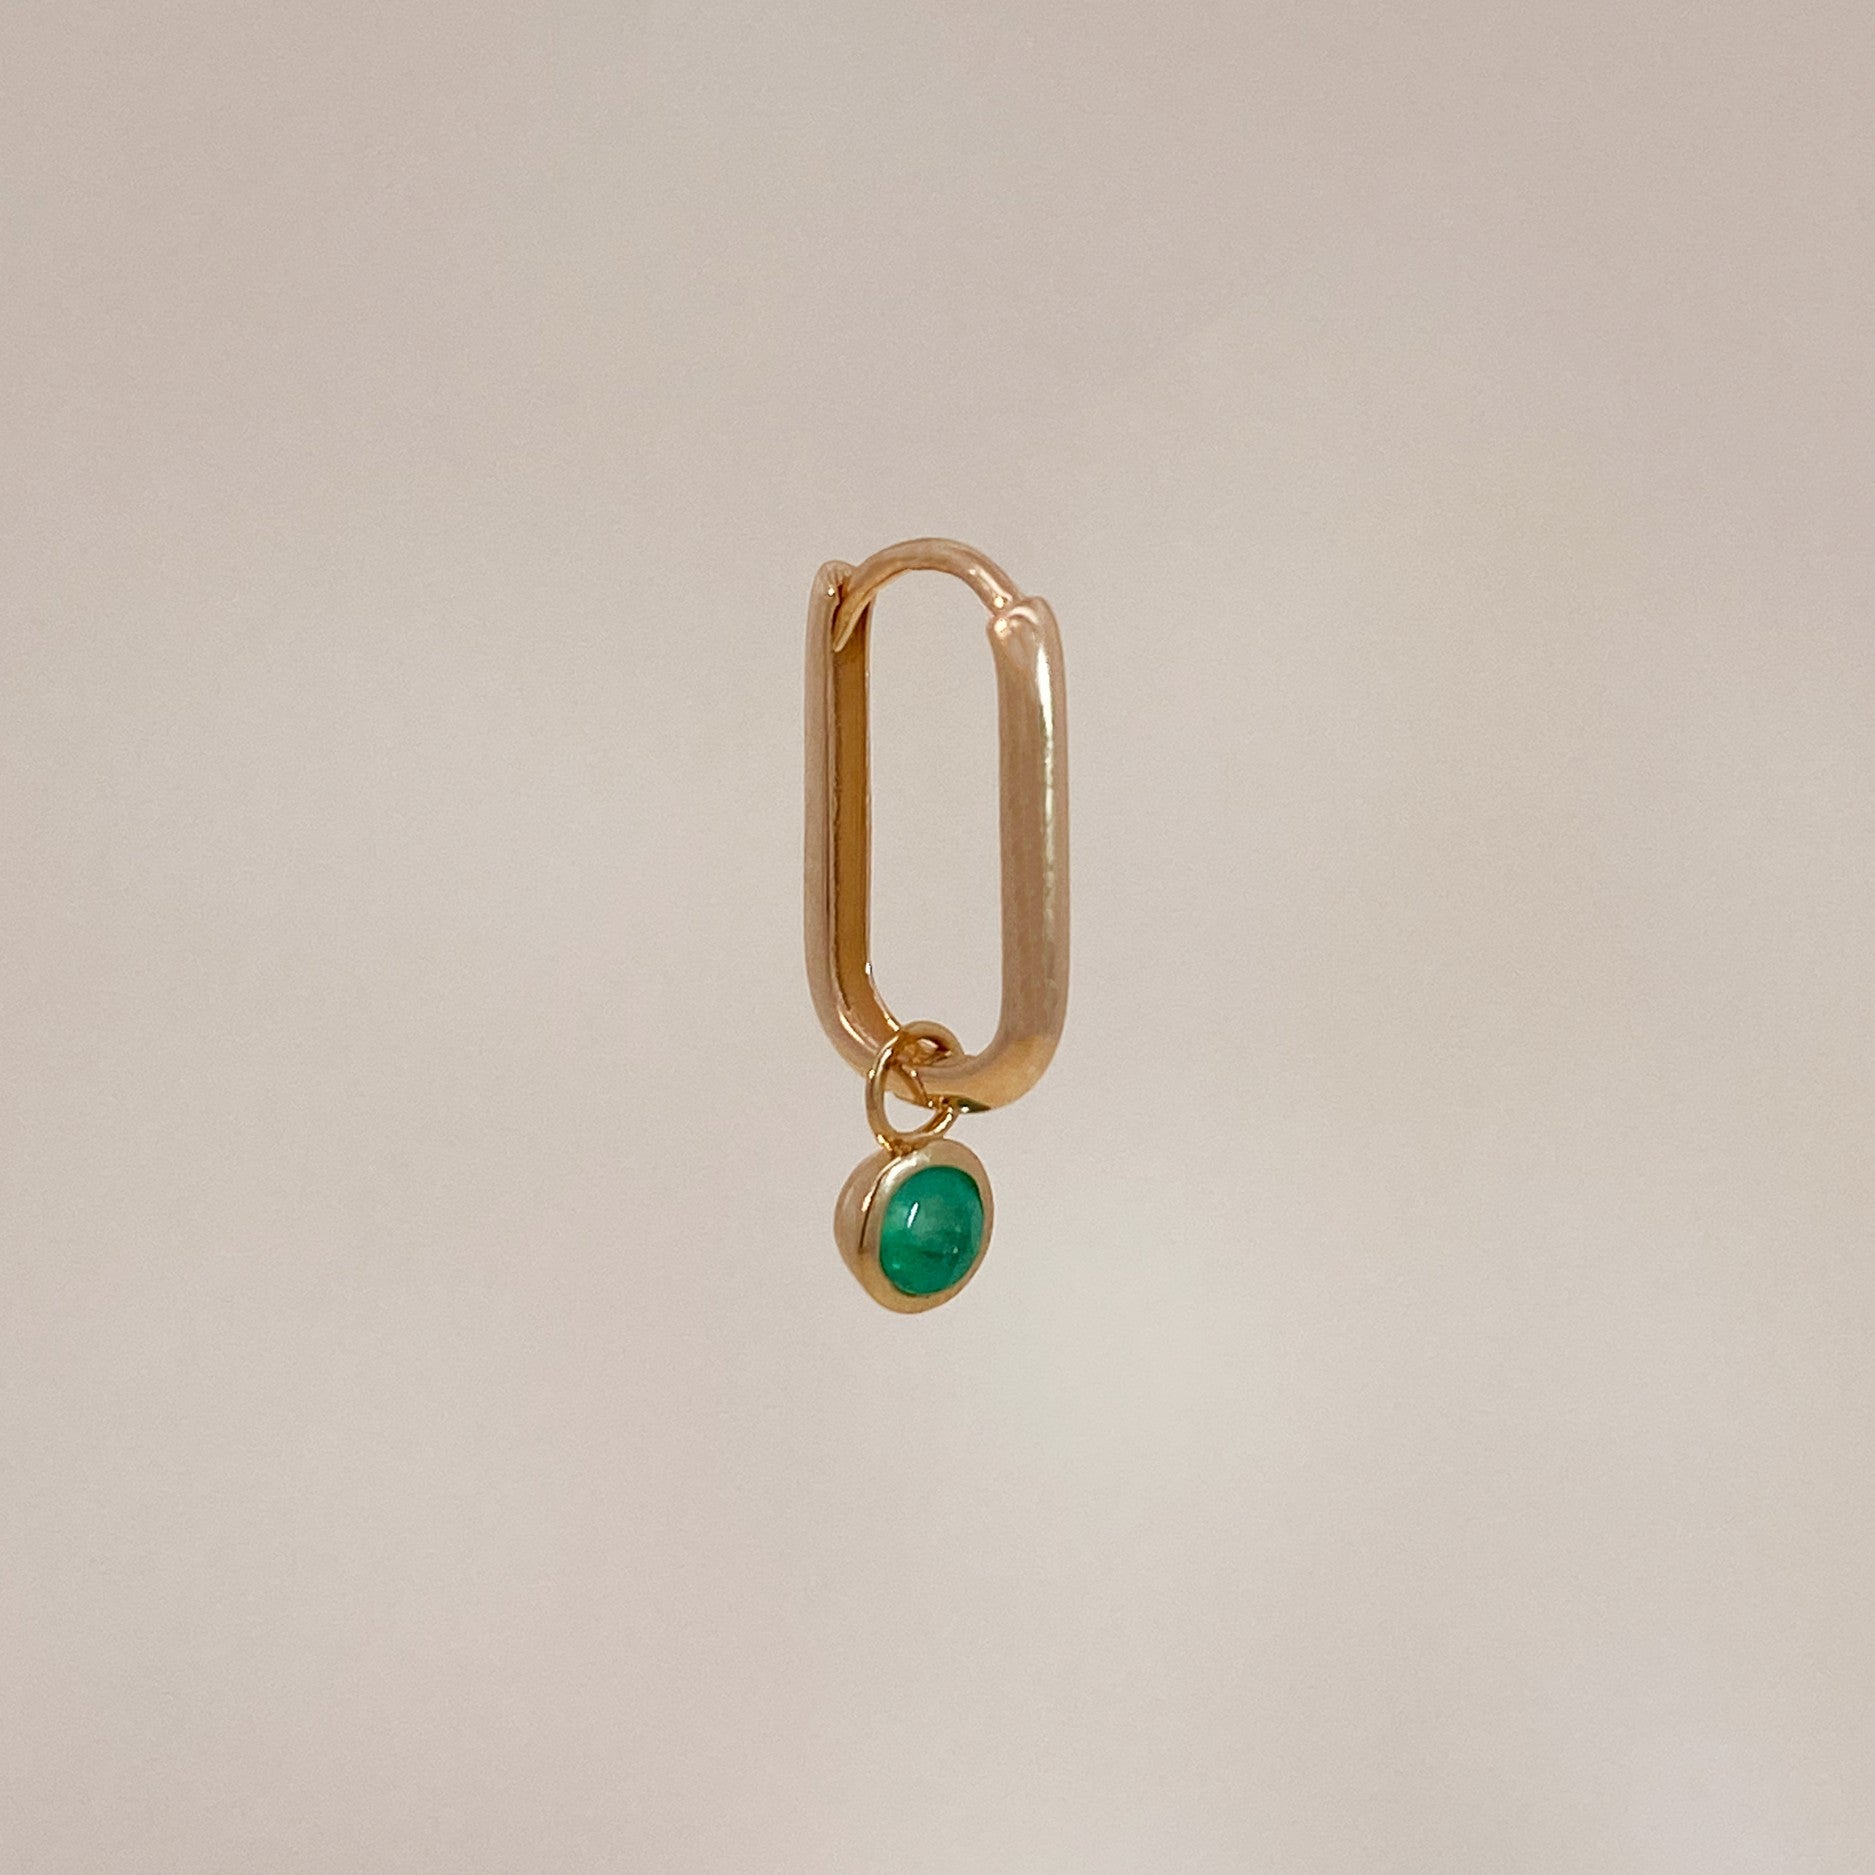 Emerald earring charm